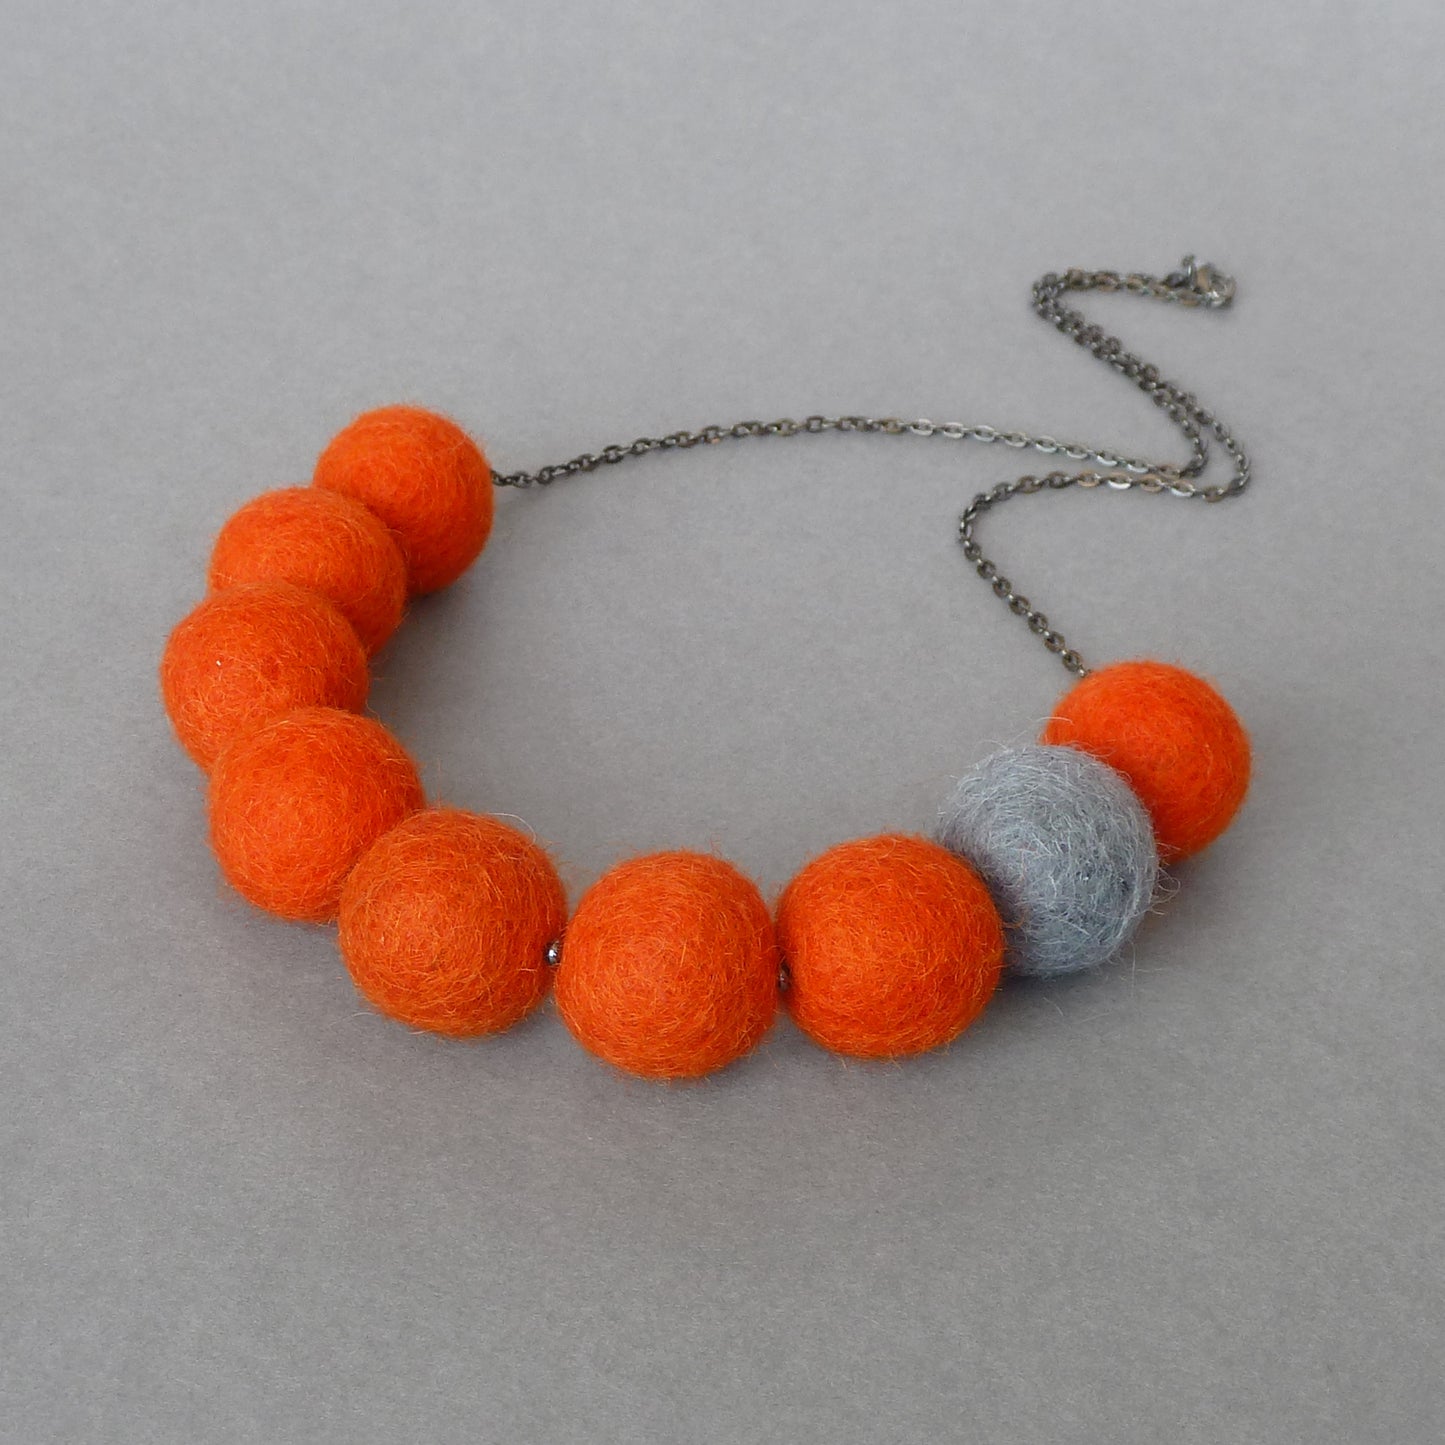 Orange and grey felt necklace